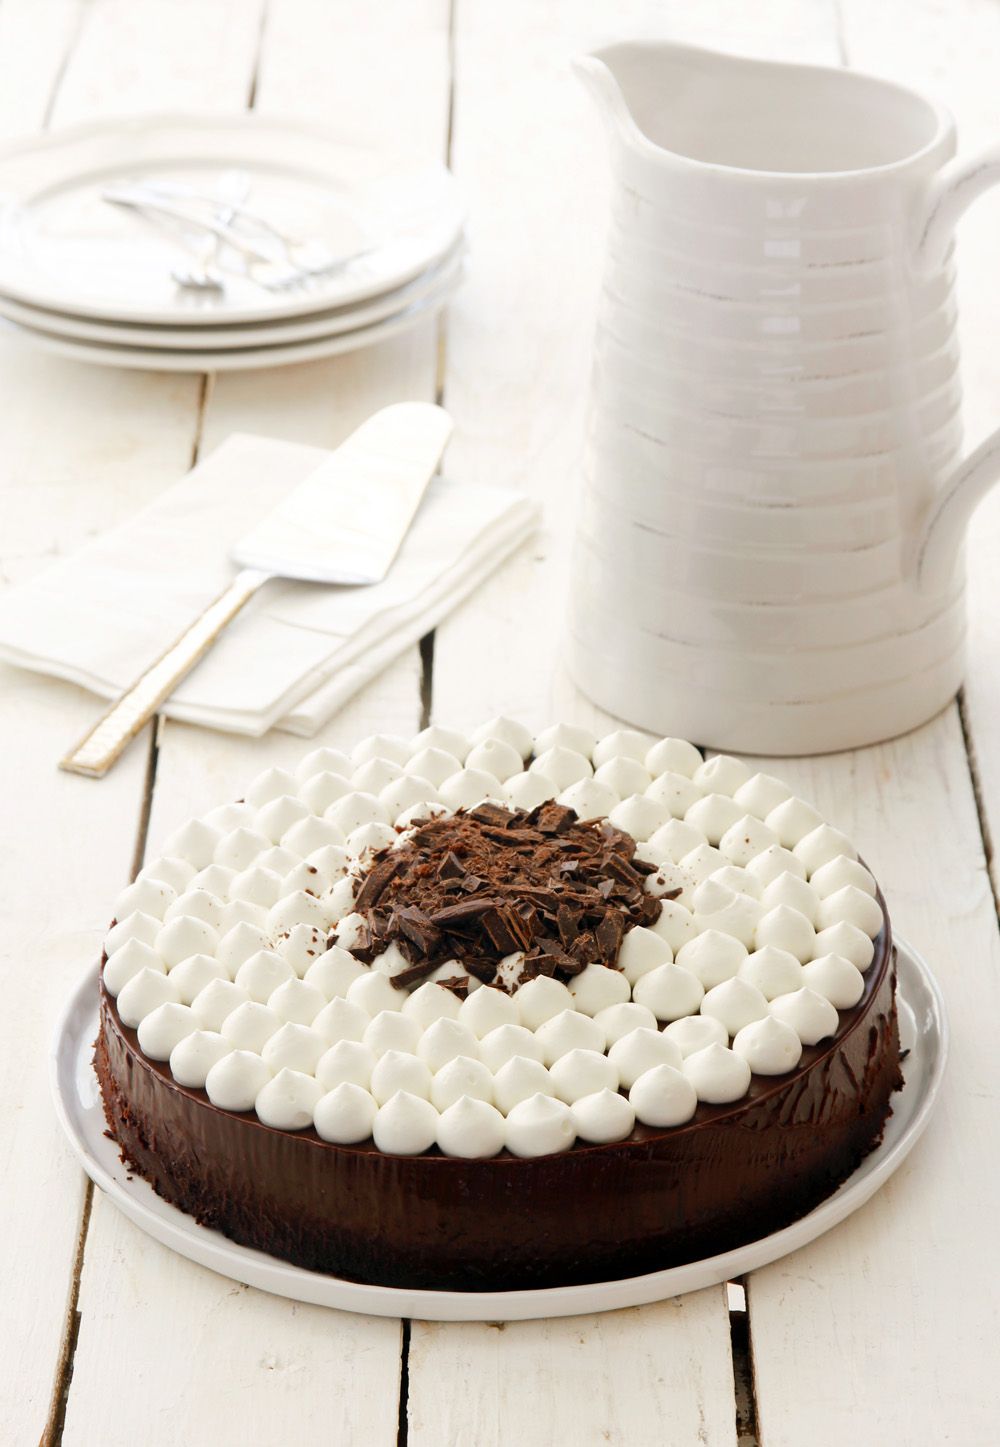 עוגת שוקולד מהירה עם ענני קצפת | צילום: נטלי לוין